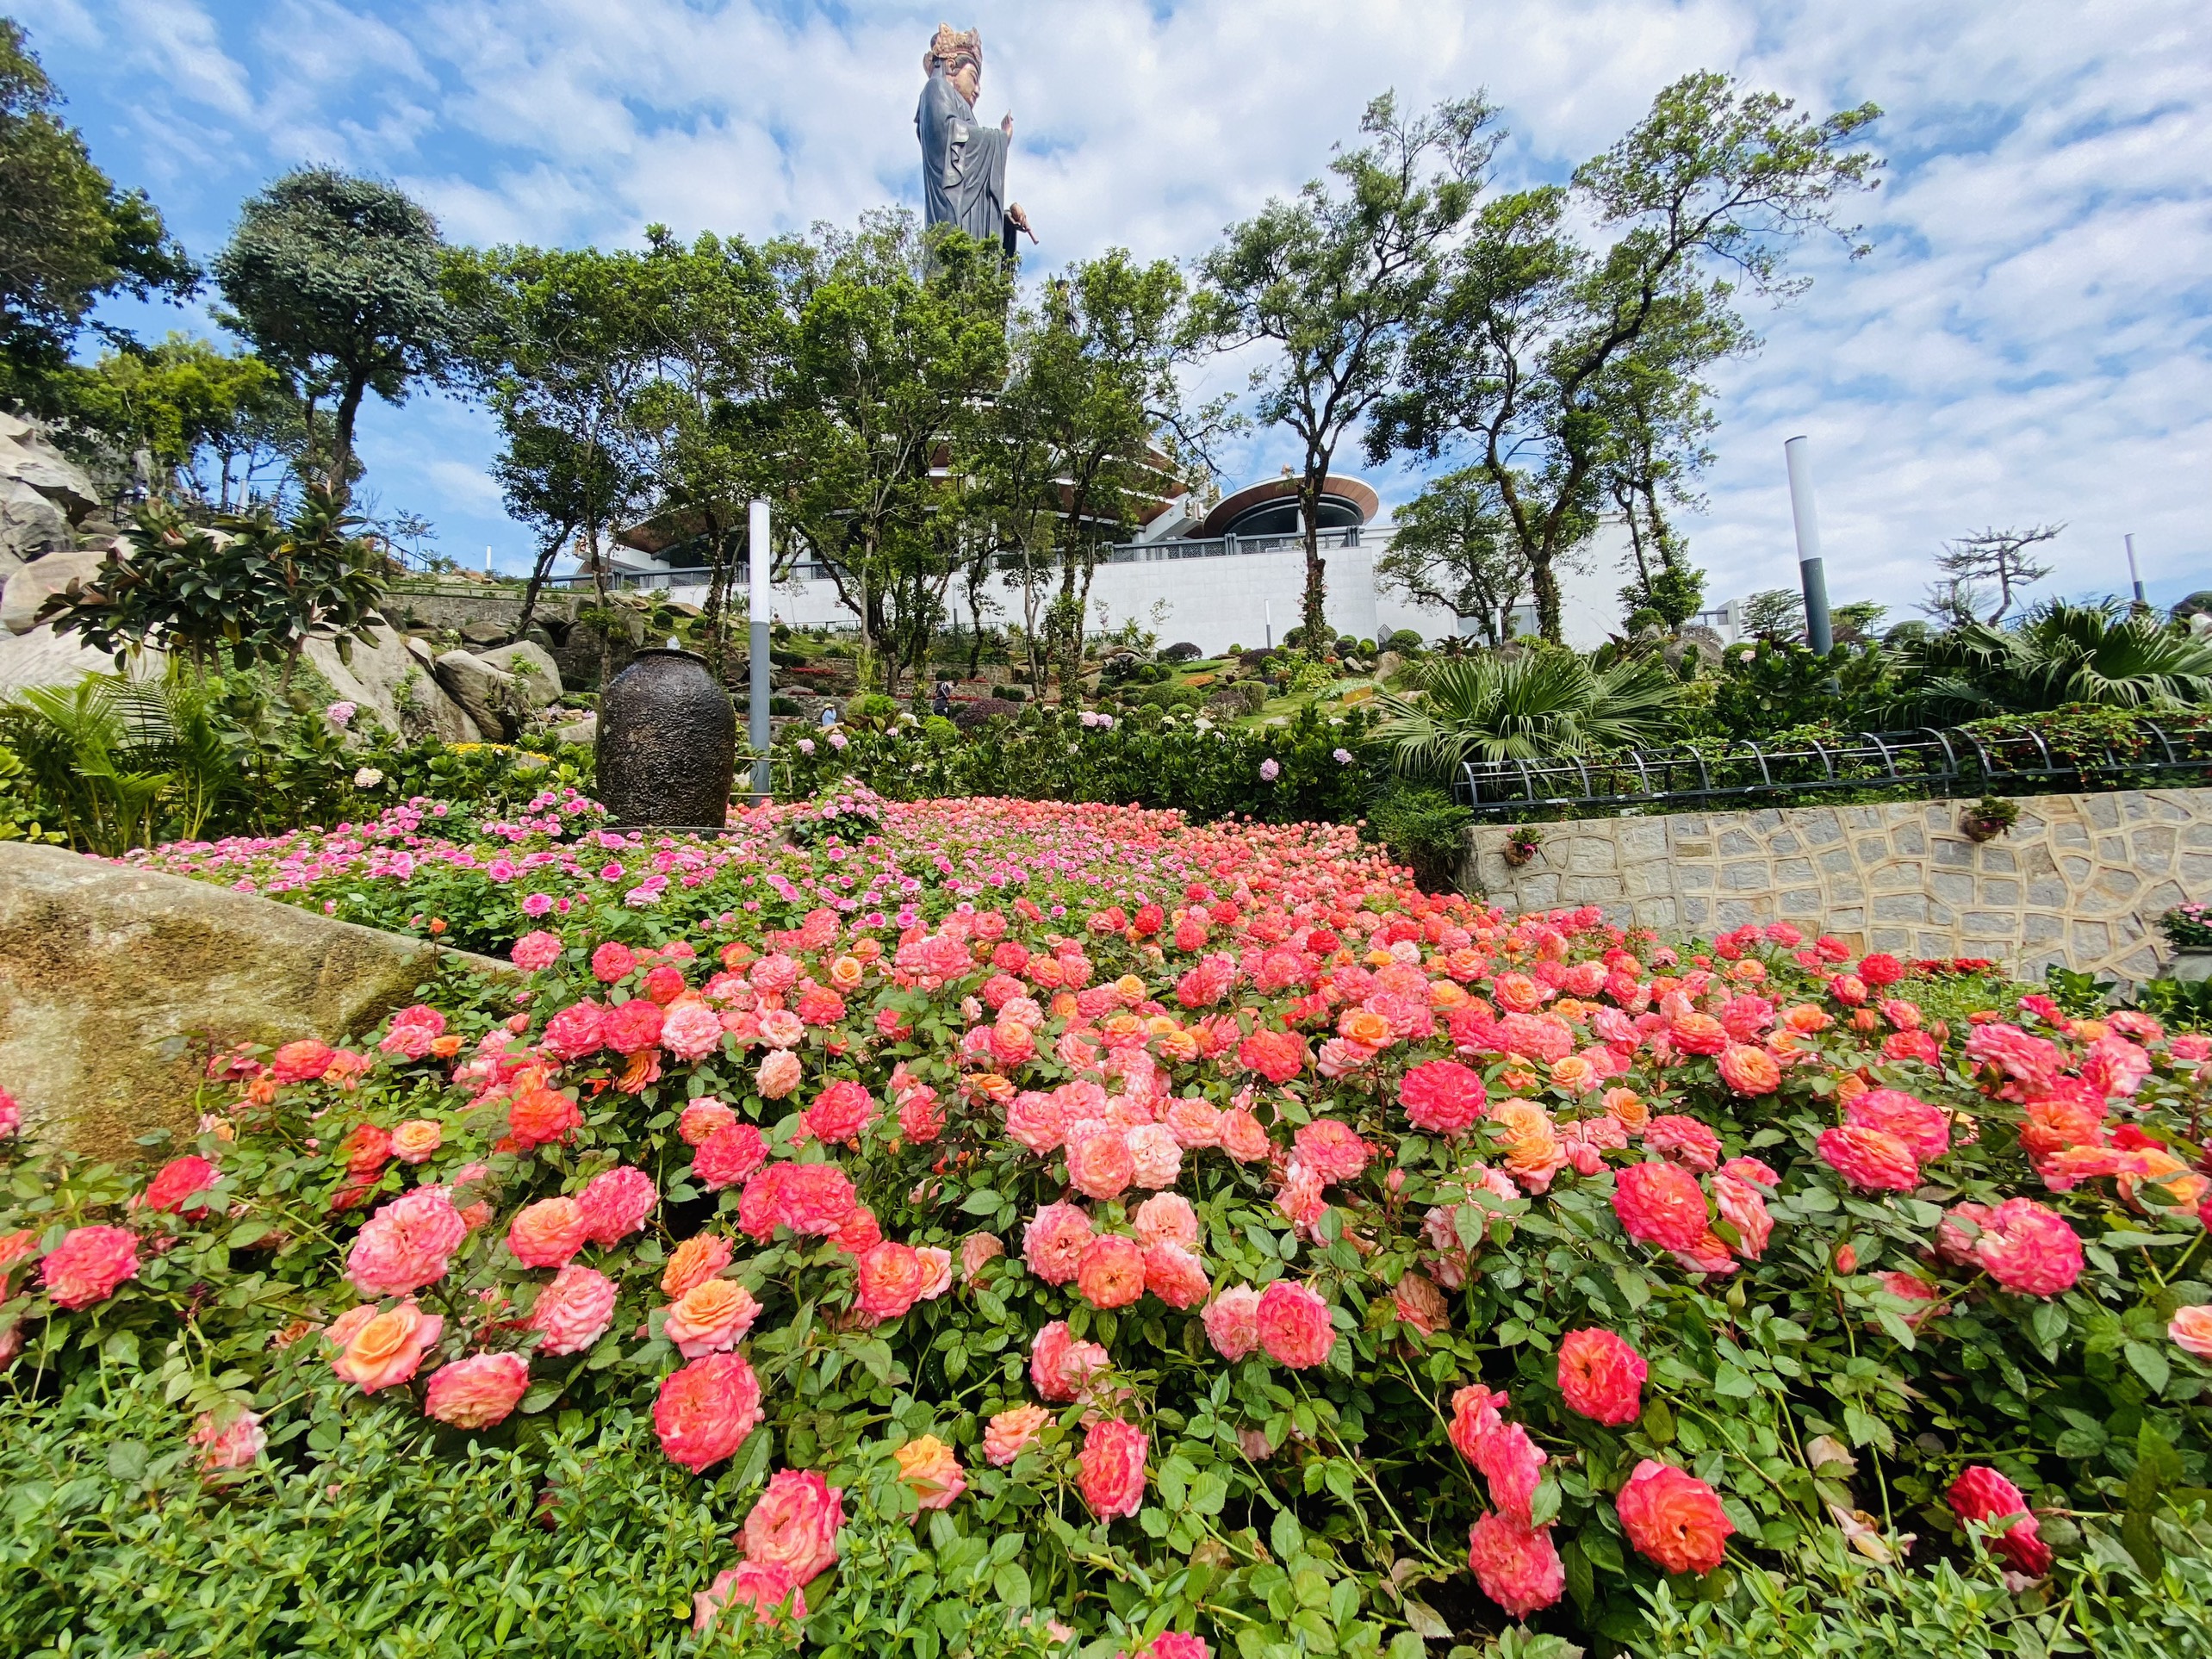 Khu du lịch Sun World Ba Den Mountain trở thành xứ sở hoa hồng với 10.000 chậu hoa hồng thuộc hàng trăm chủng loại khác nhau. (Ảnh: Sungroup cung cấp)